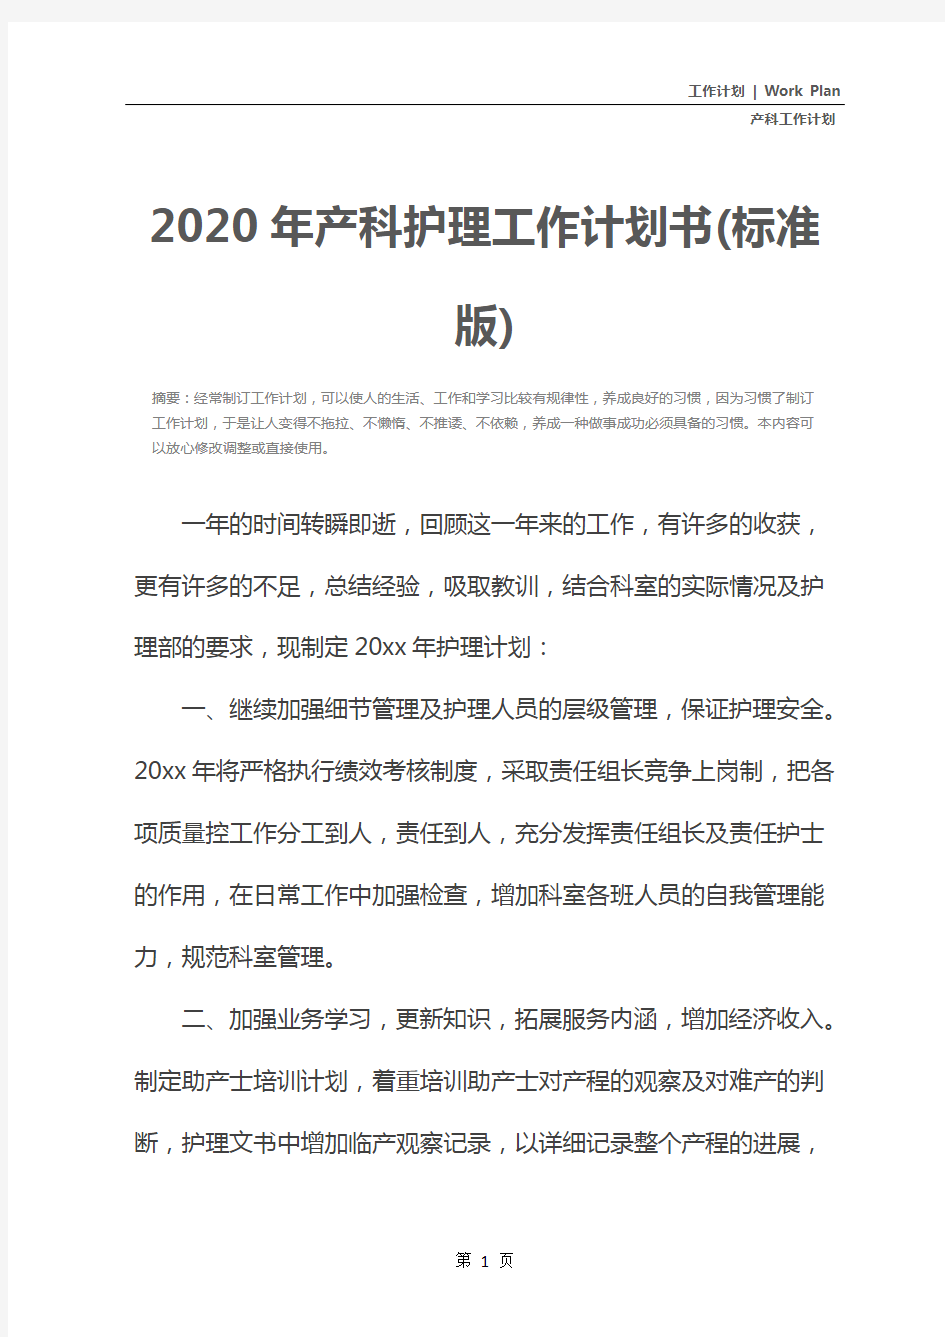 2020年产科护理工作计划书(标准版)